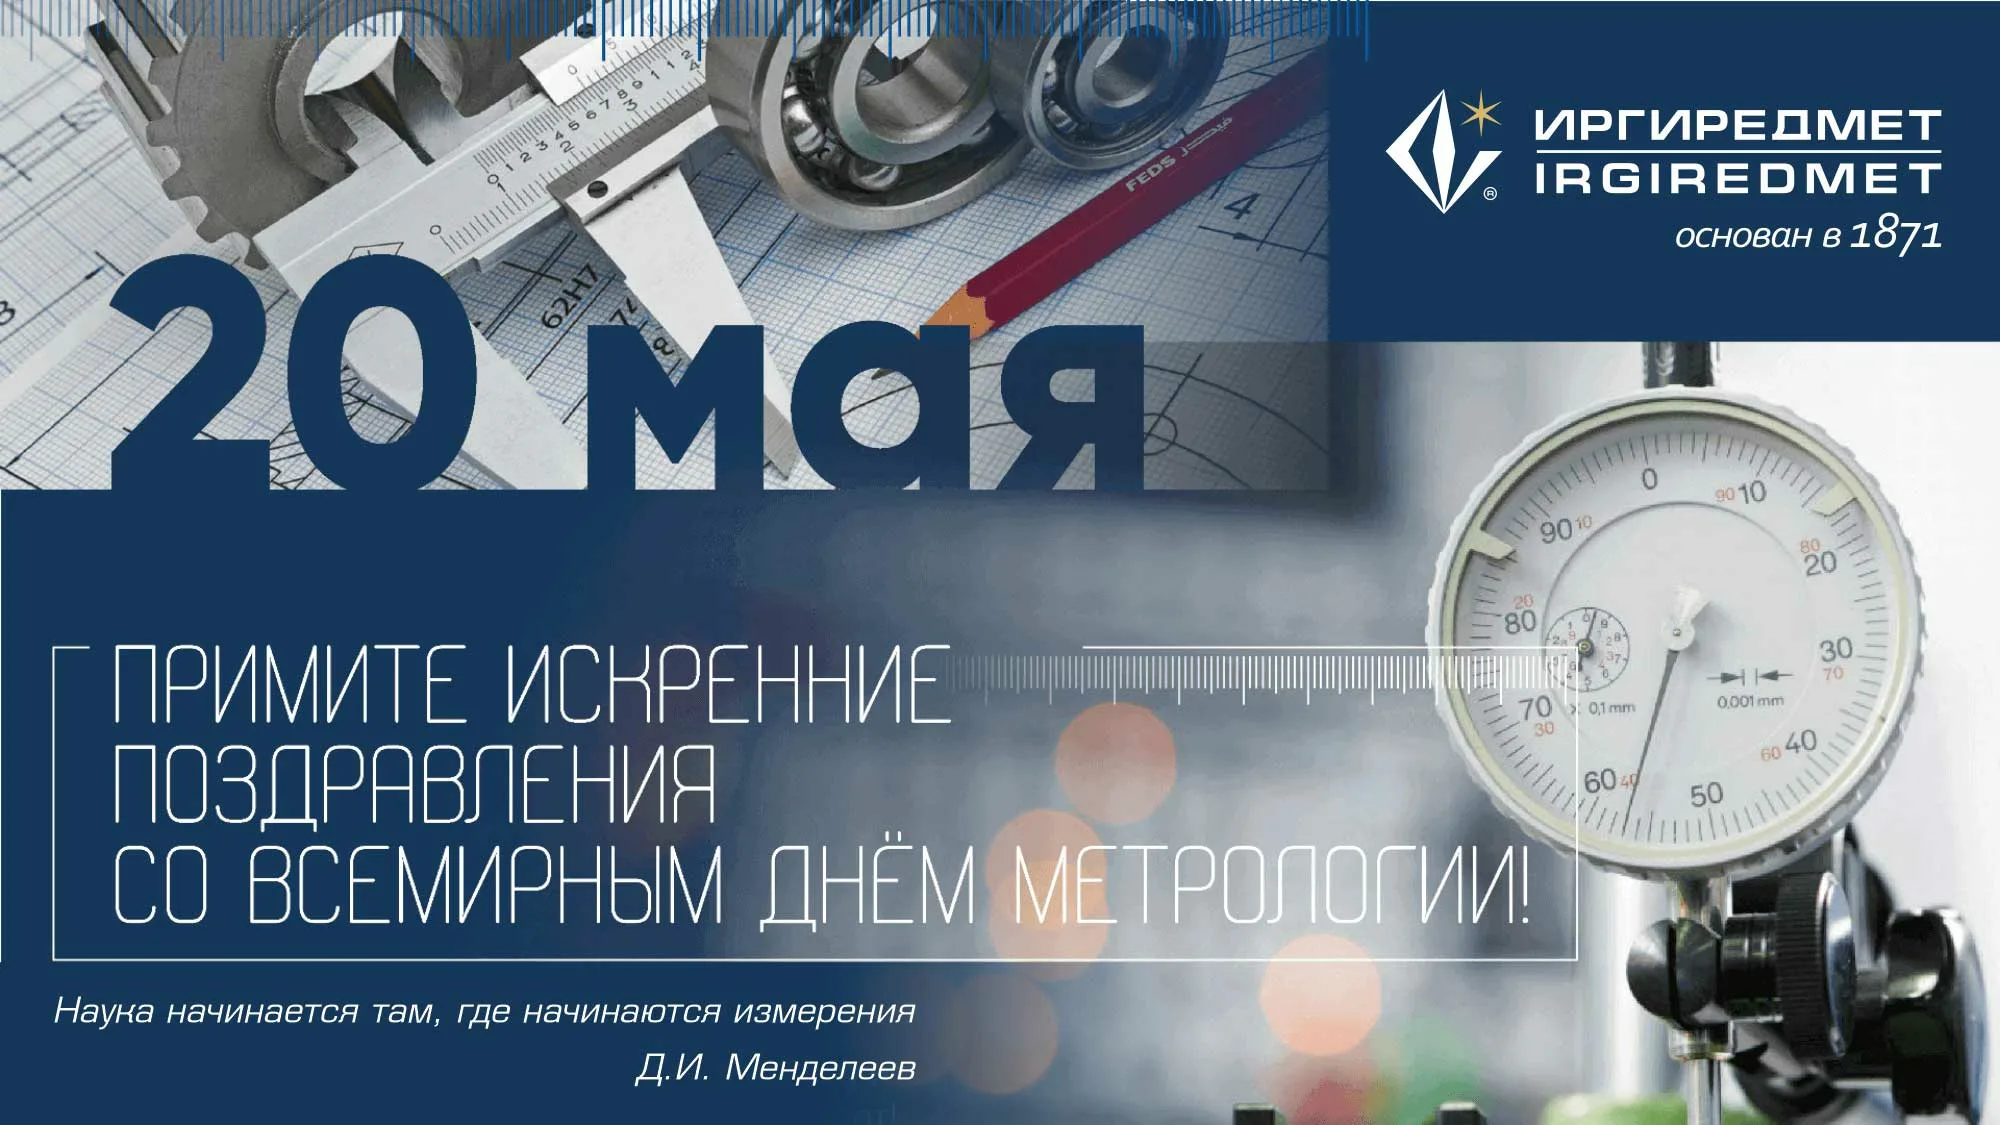 Фото Поздравления в день работников стандартизации и метрологии Украины #2